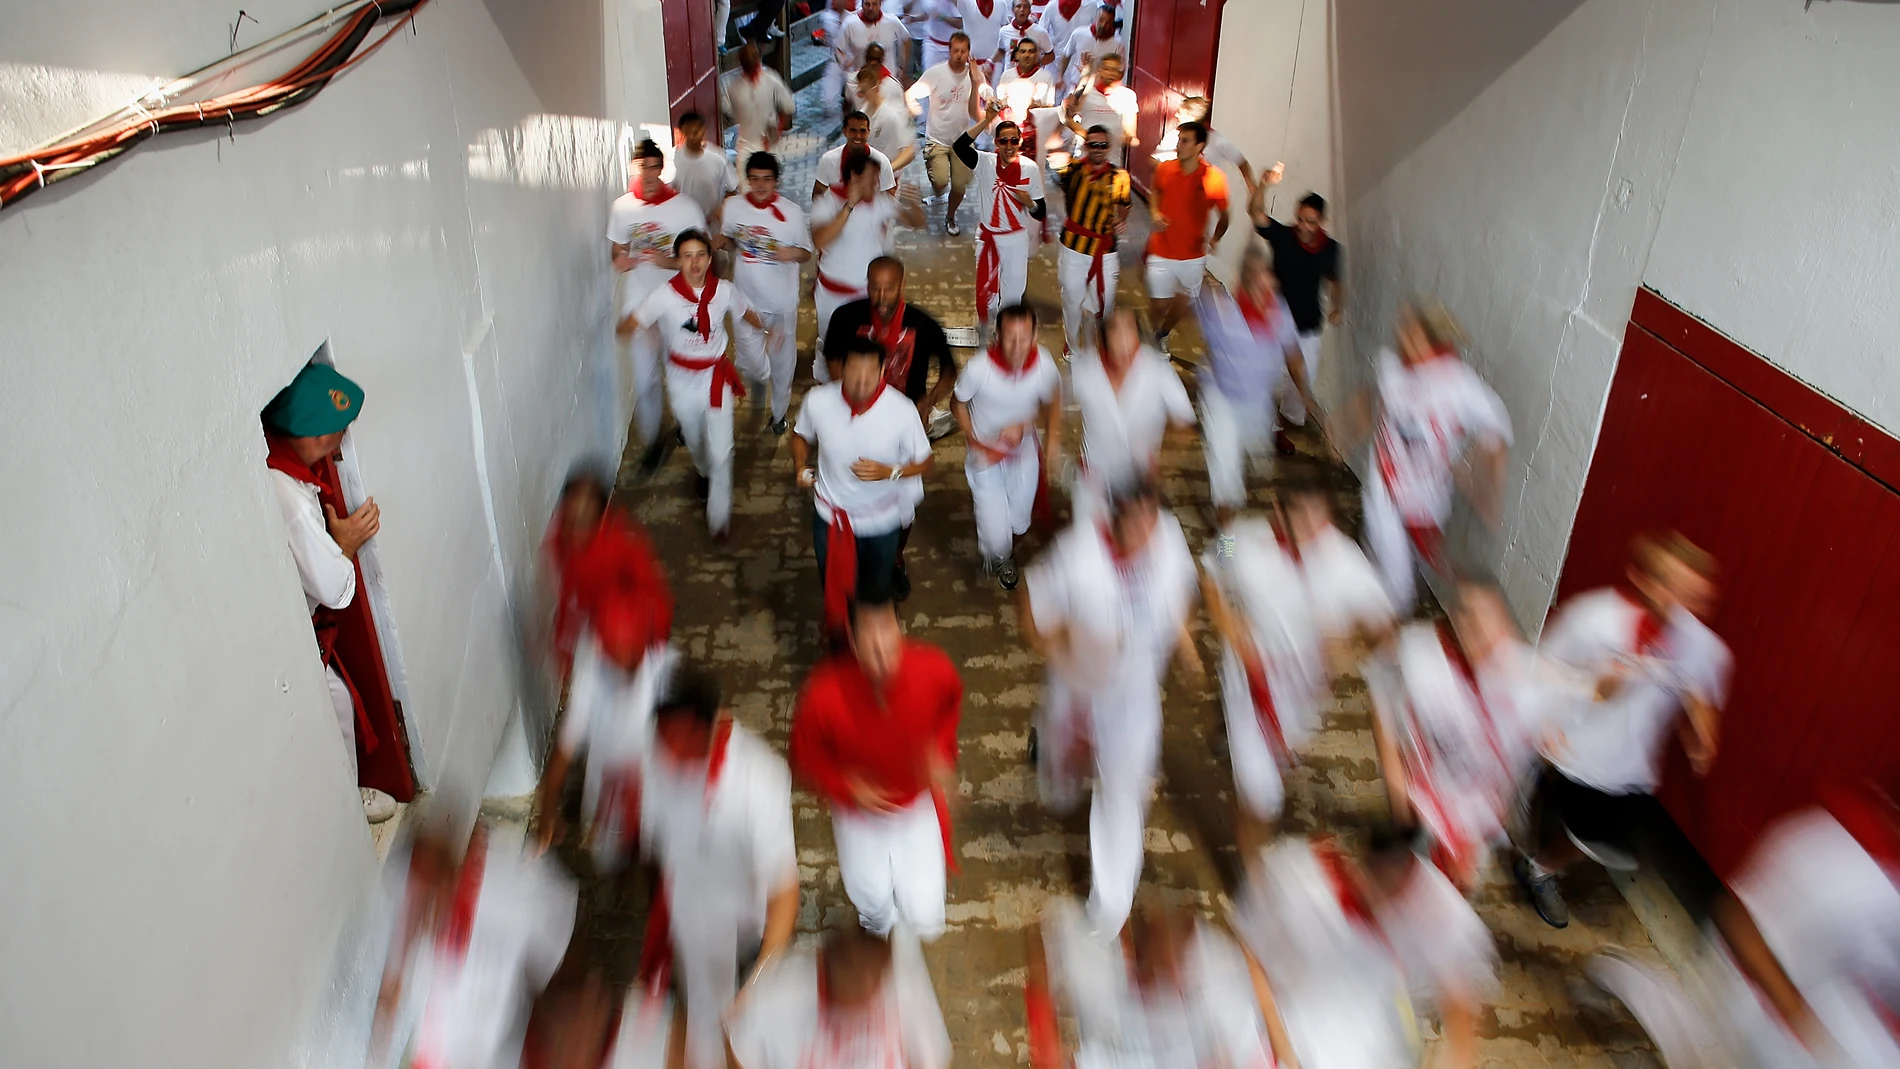 Una imagen de corredores terminando un encierro de San Fermín (Pamplona) en 2013